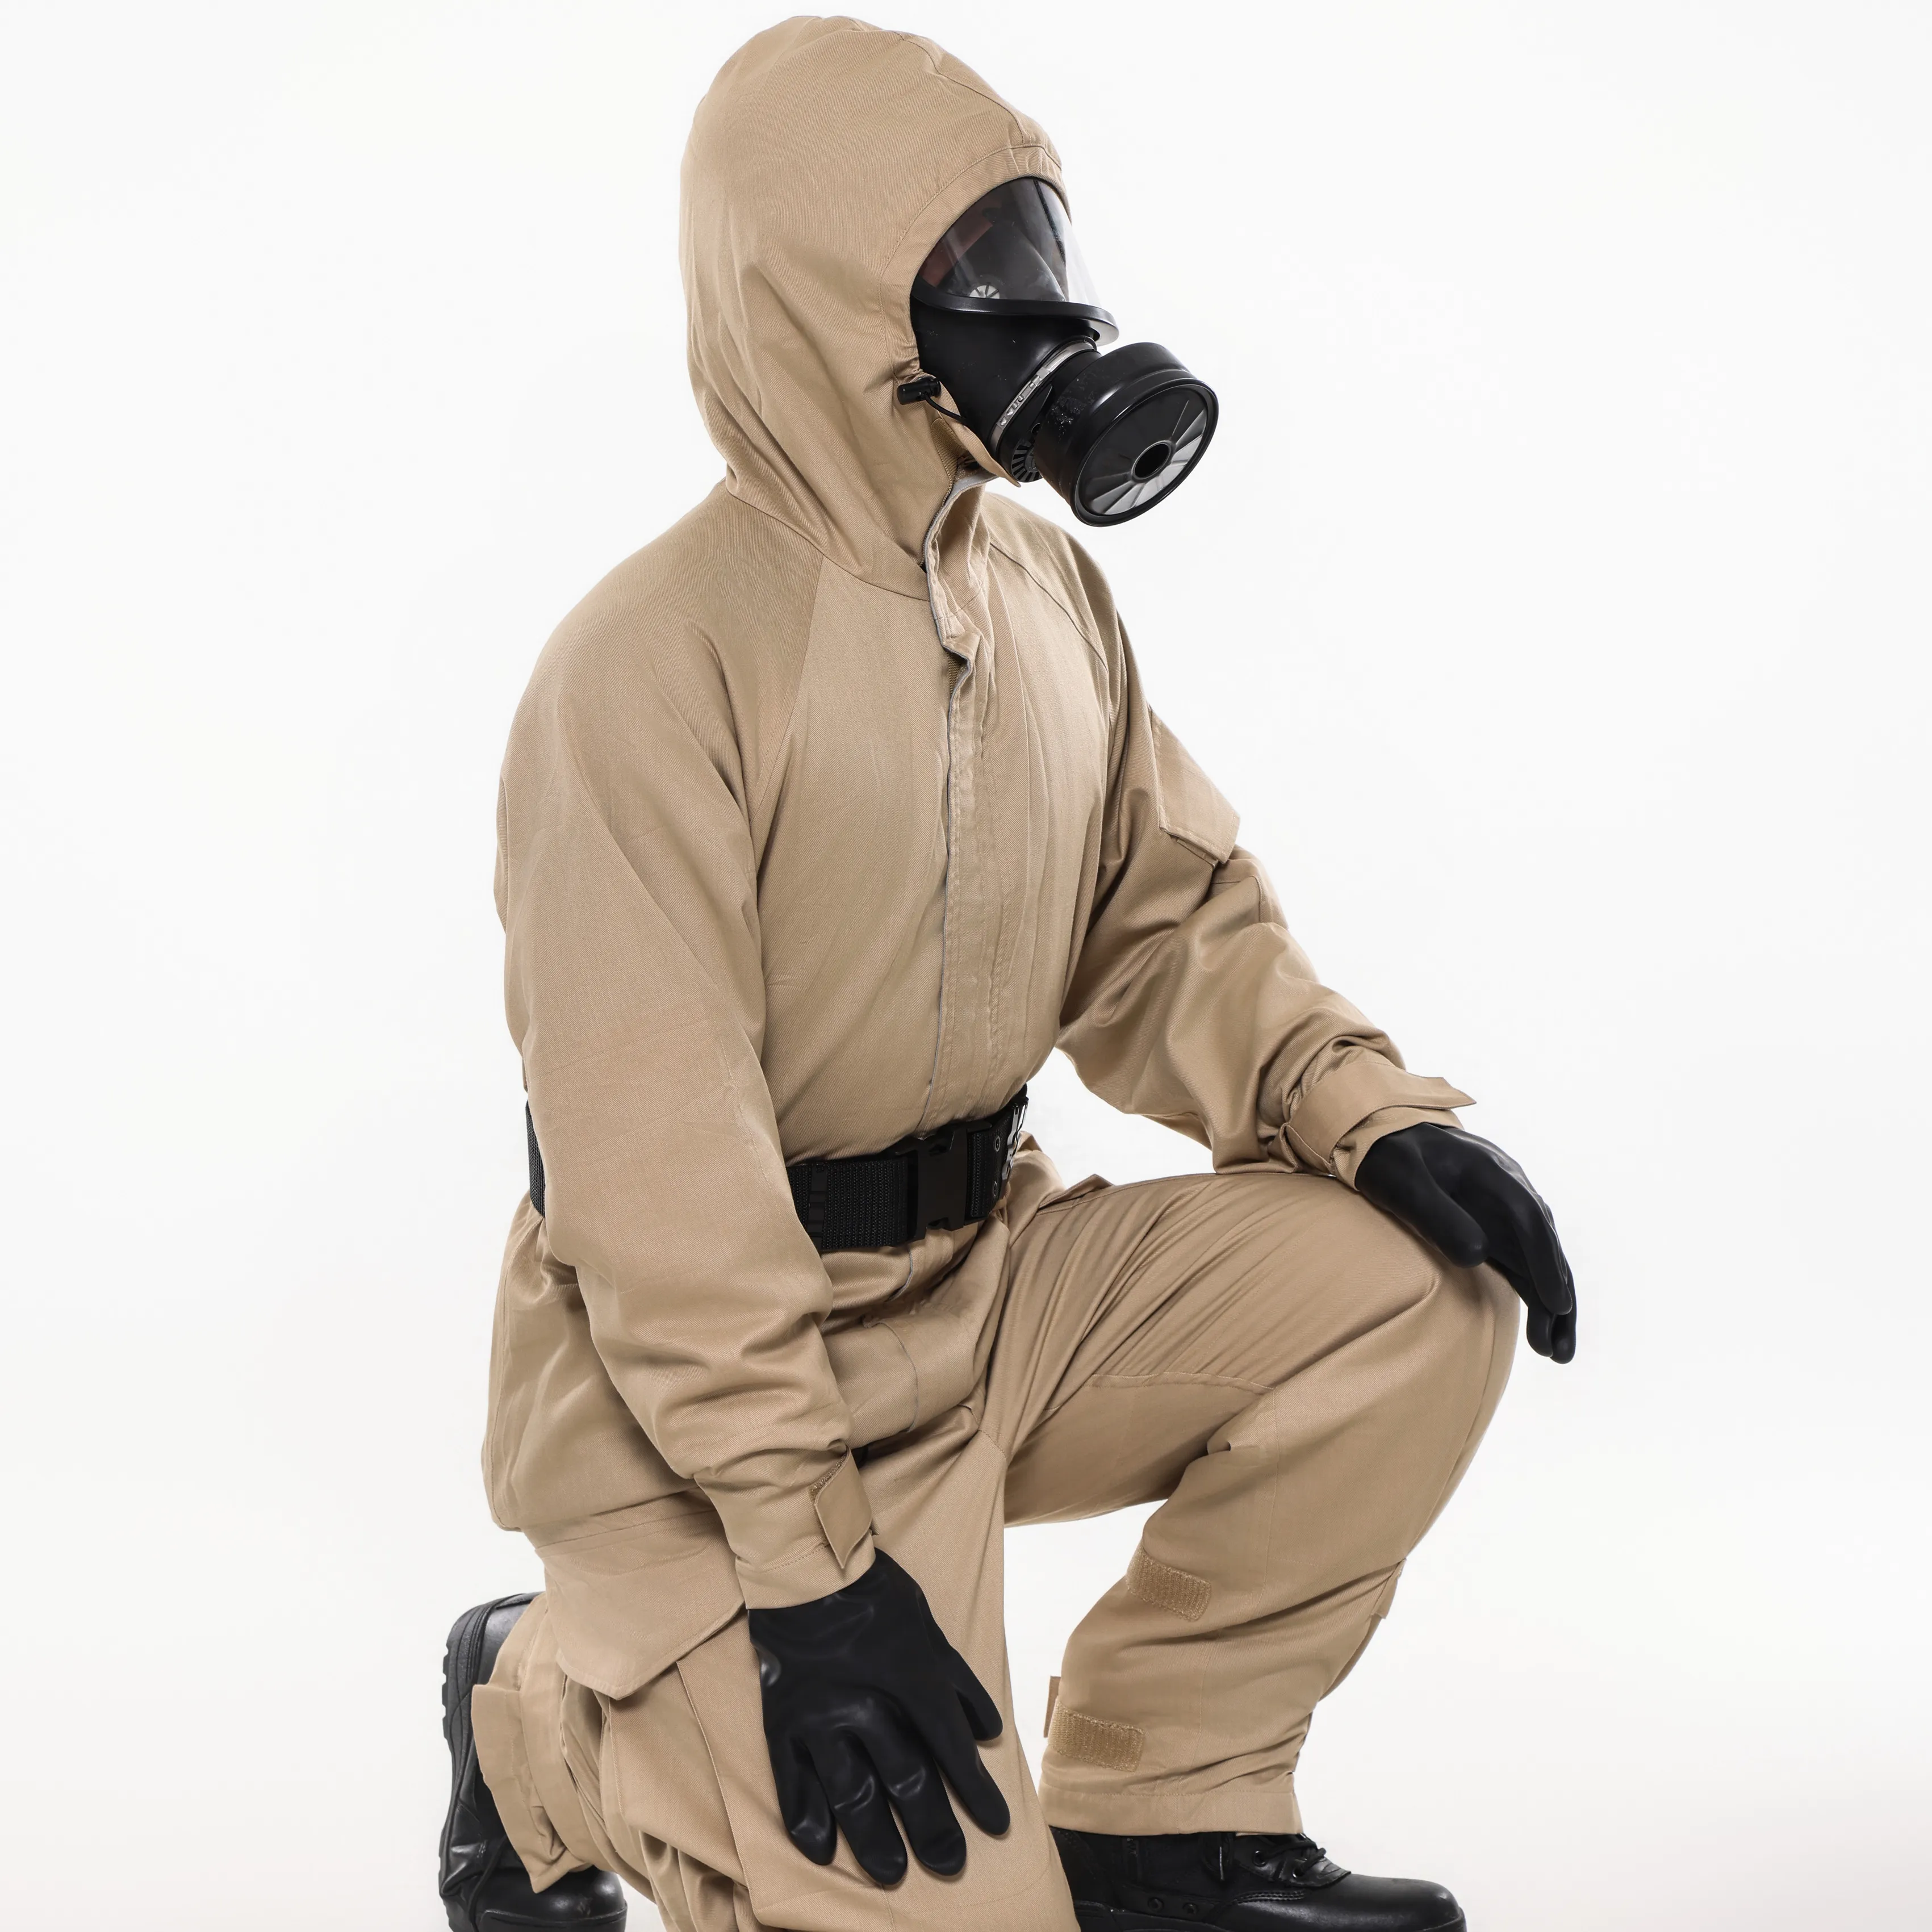 GGM-05 Roupas de proteção respiráveis em tecido de carbono ativado para roupas de trabalho de produção química industrial